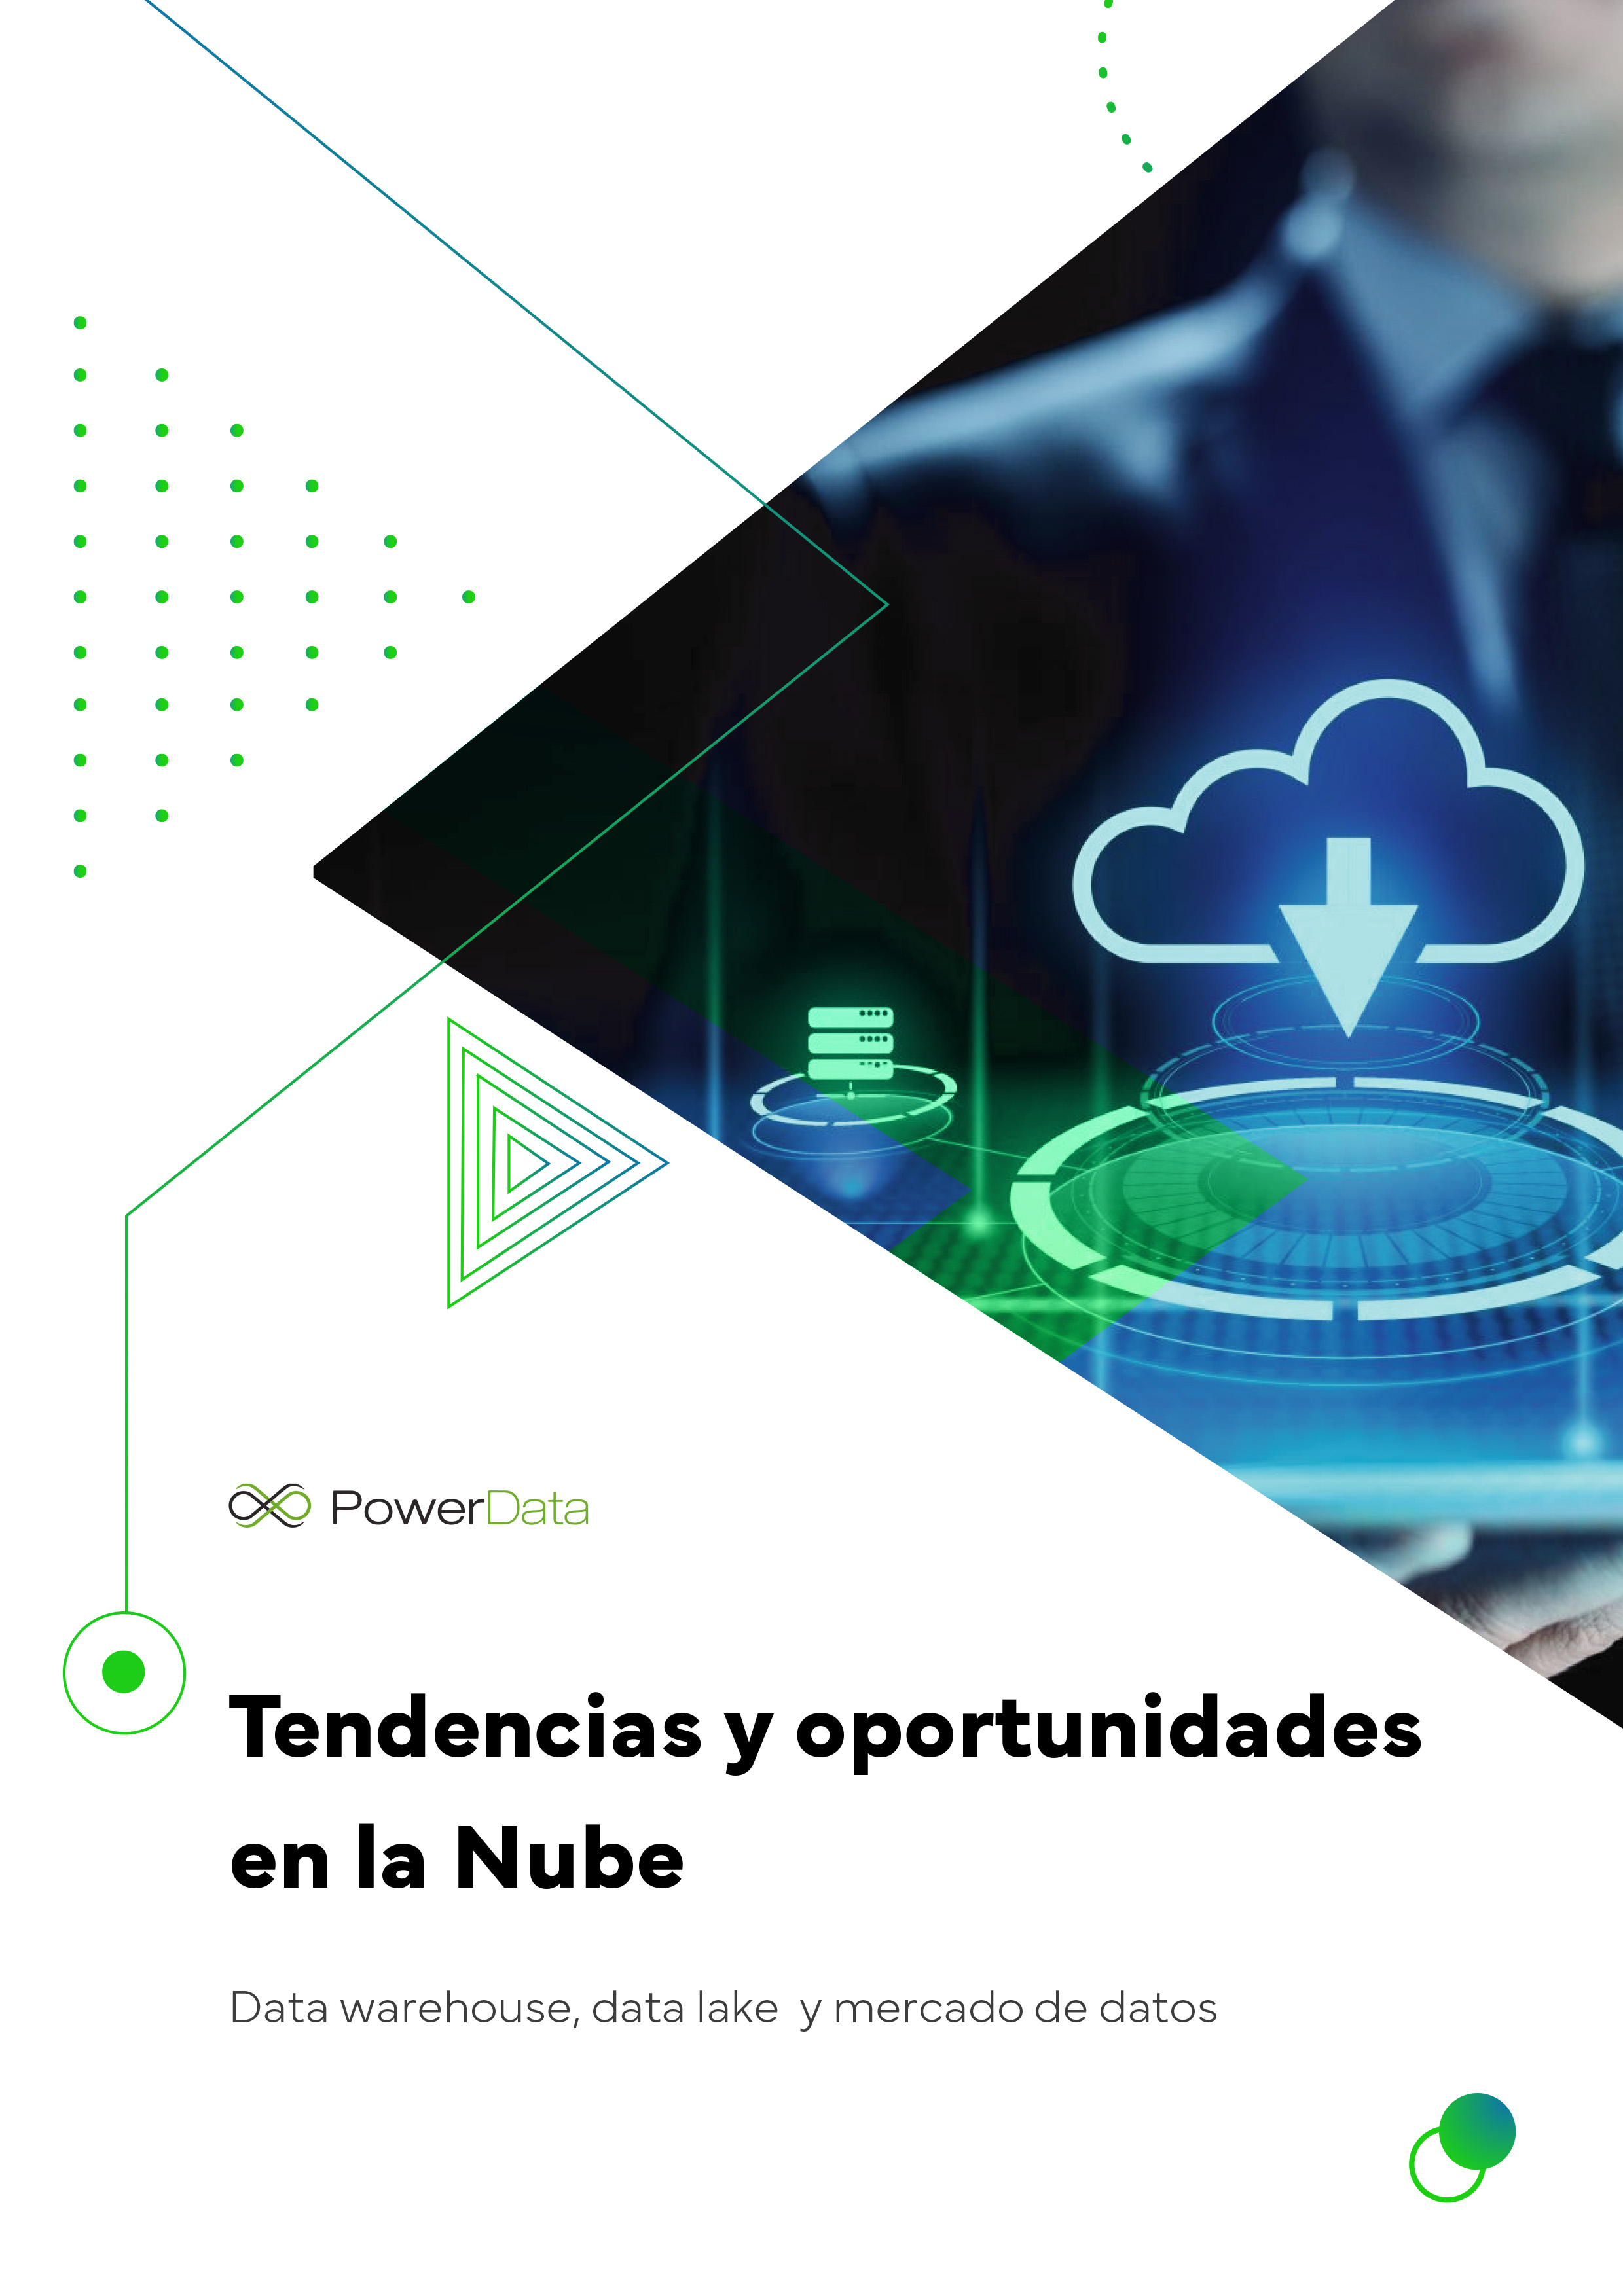 Tendencias y oportunidades en la Nube: data warehouse, data lake y mercado de datos